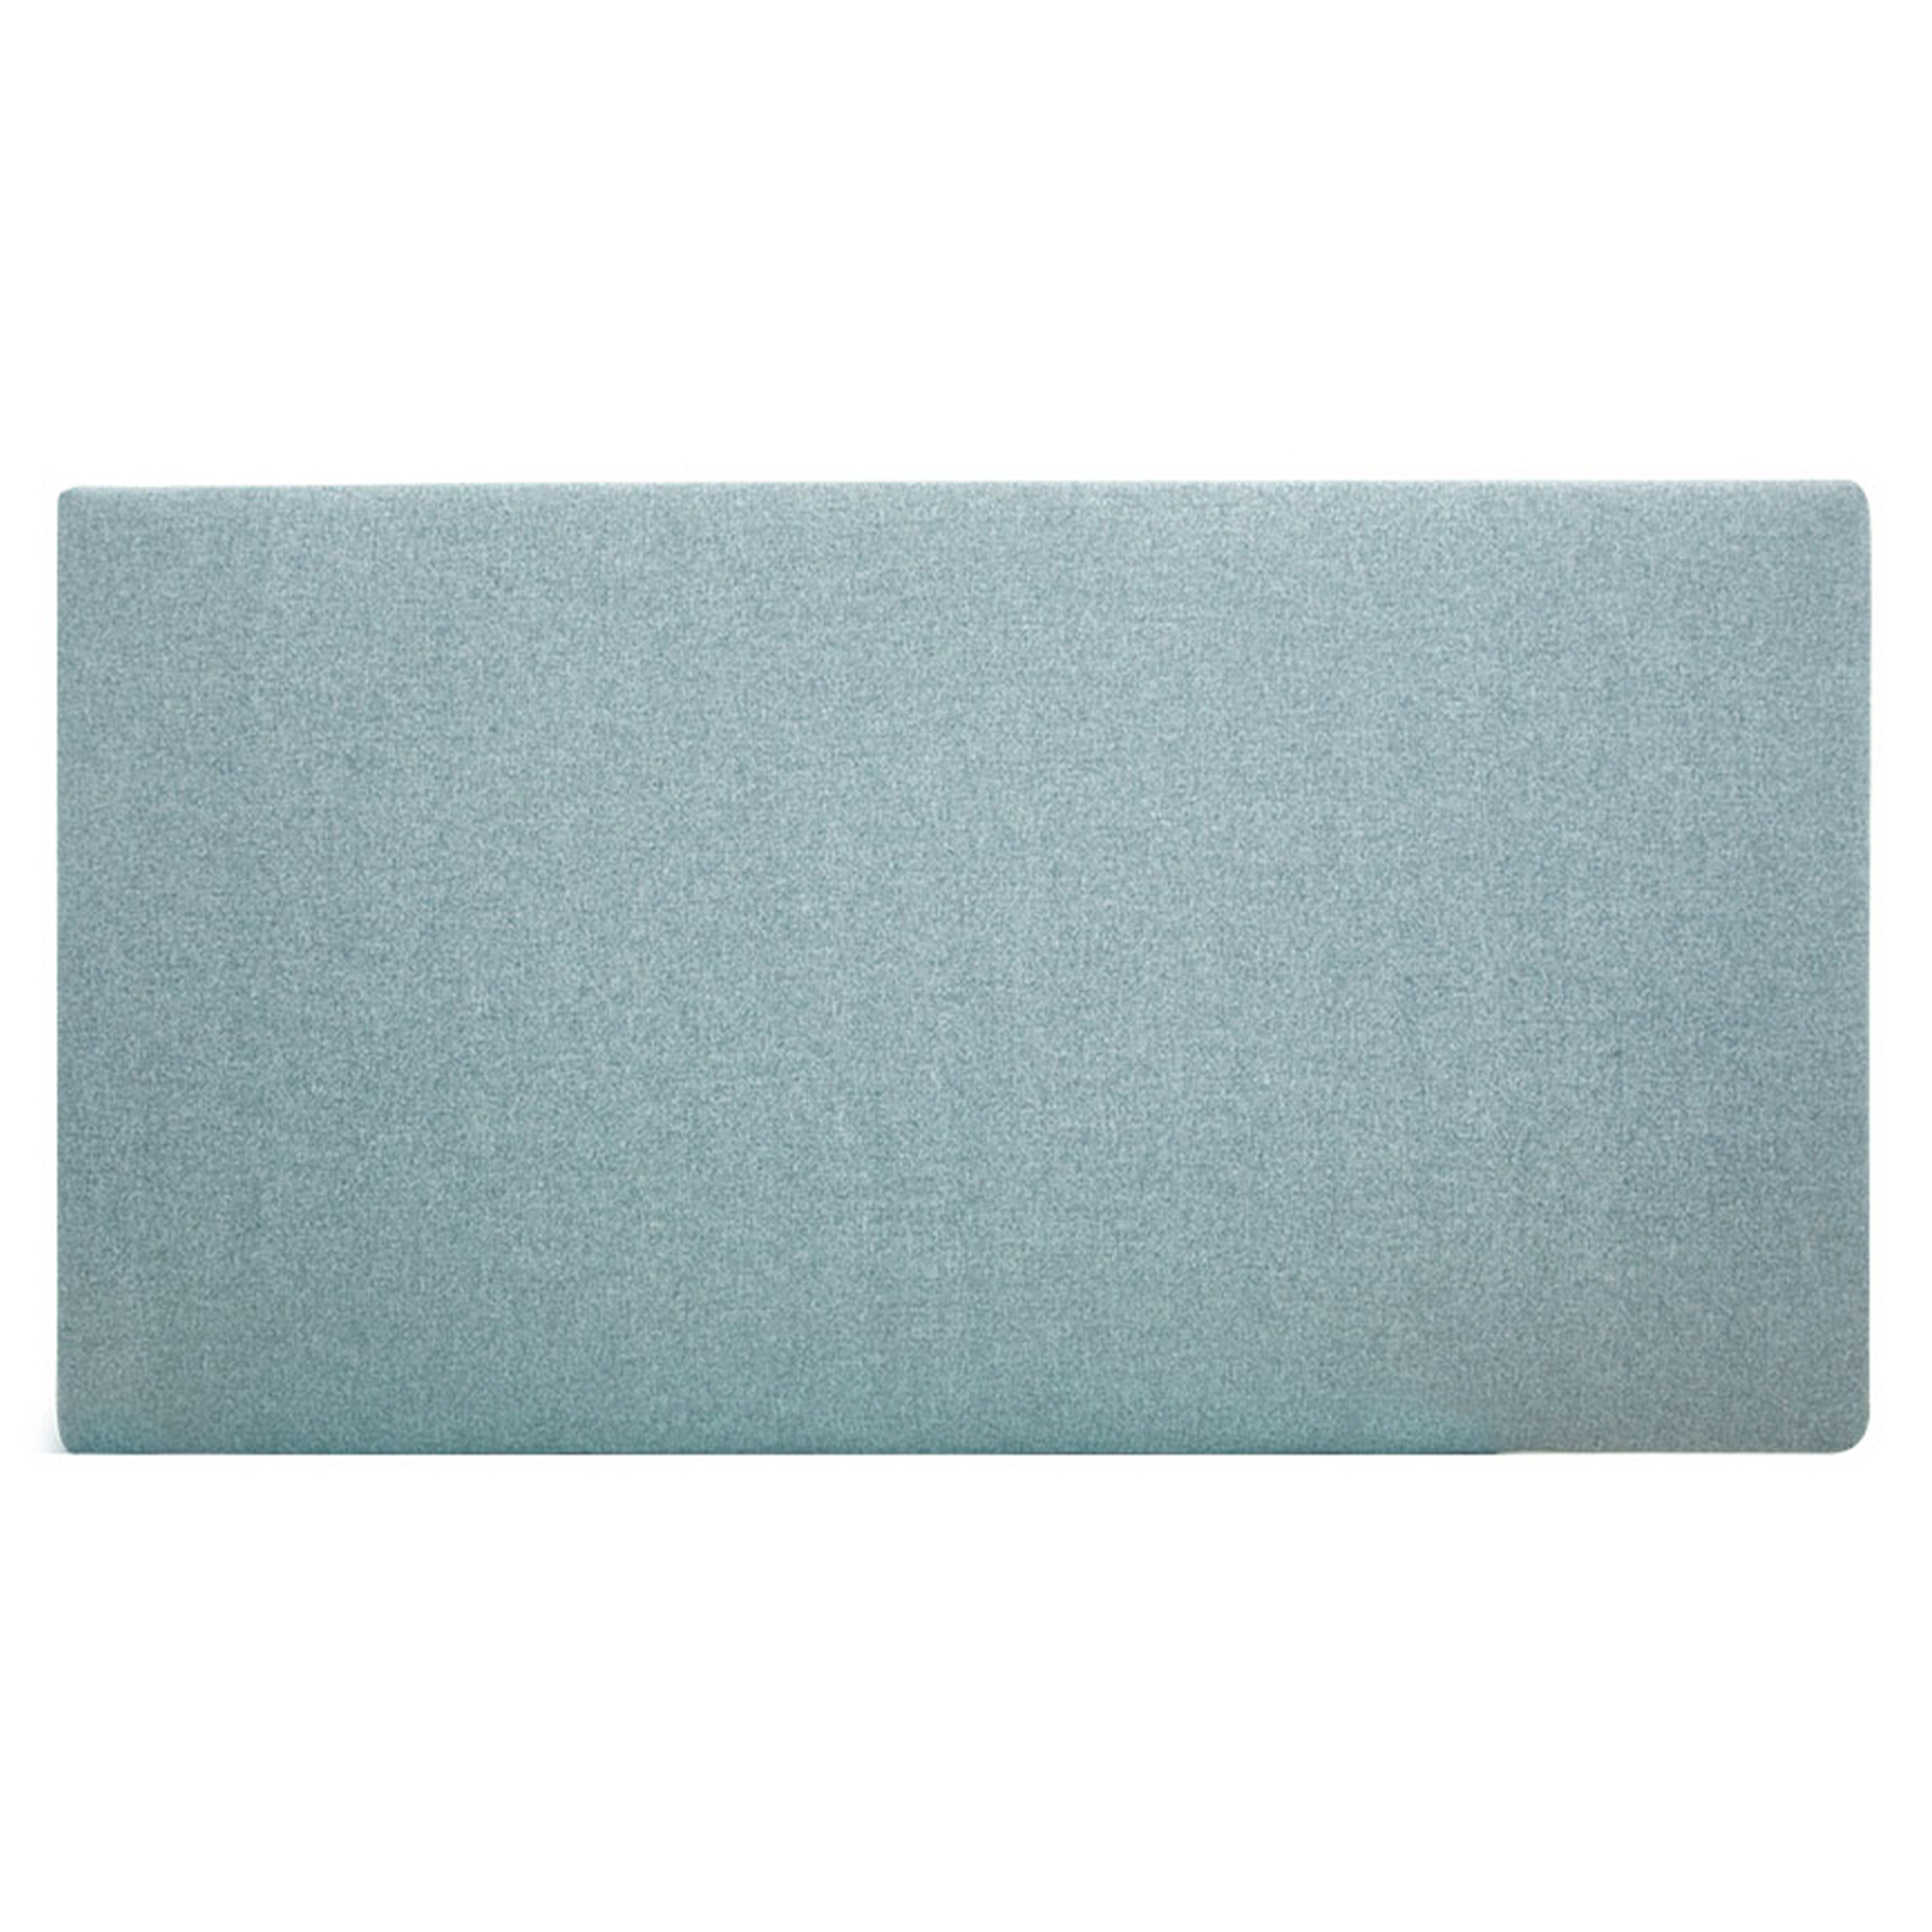 Tête de lit polyester lisse couleur bleu-verte 180x80cm